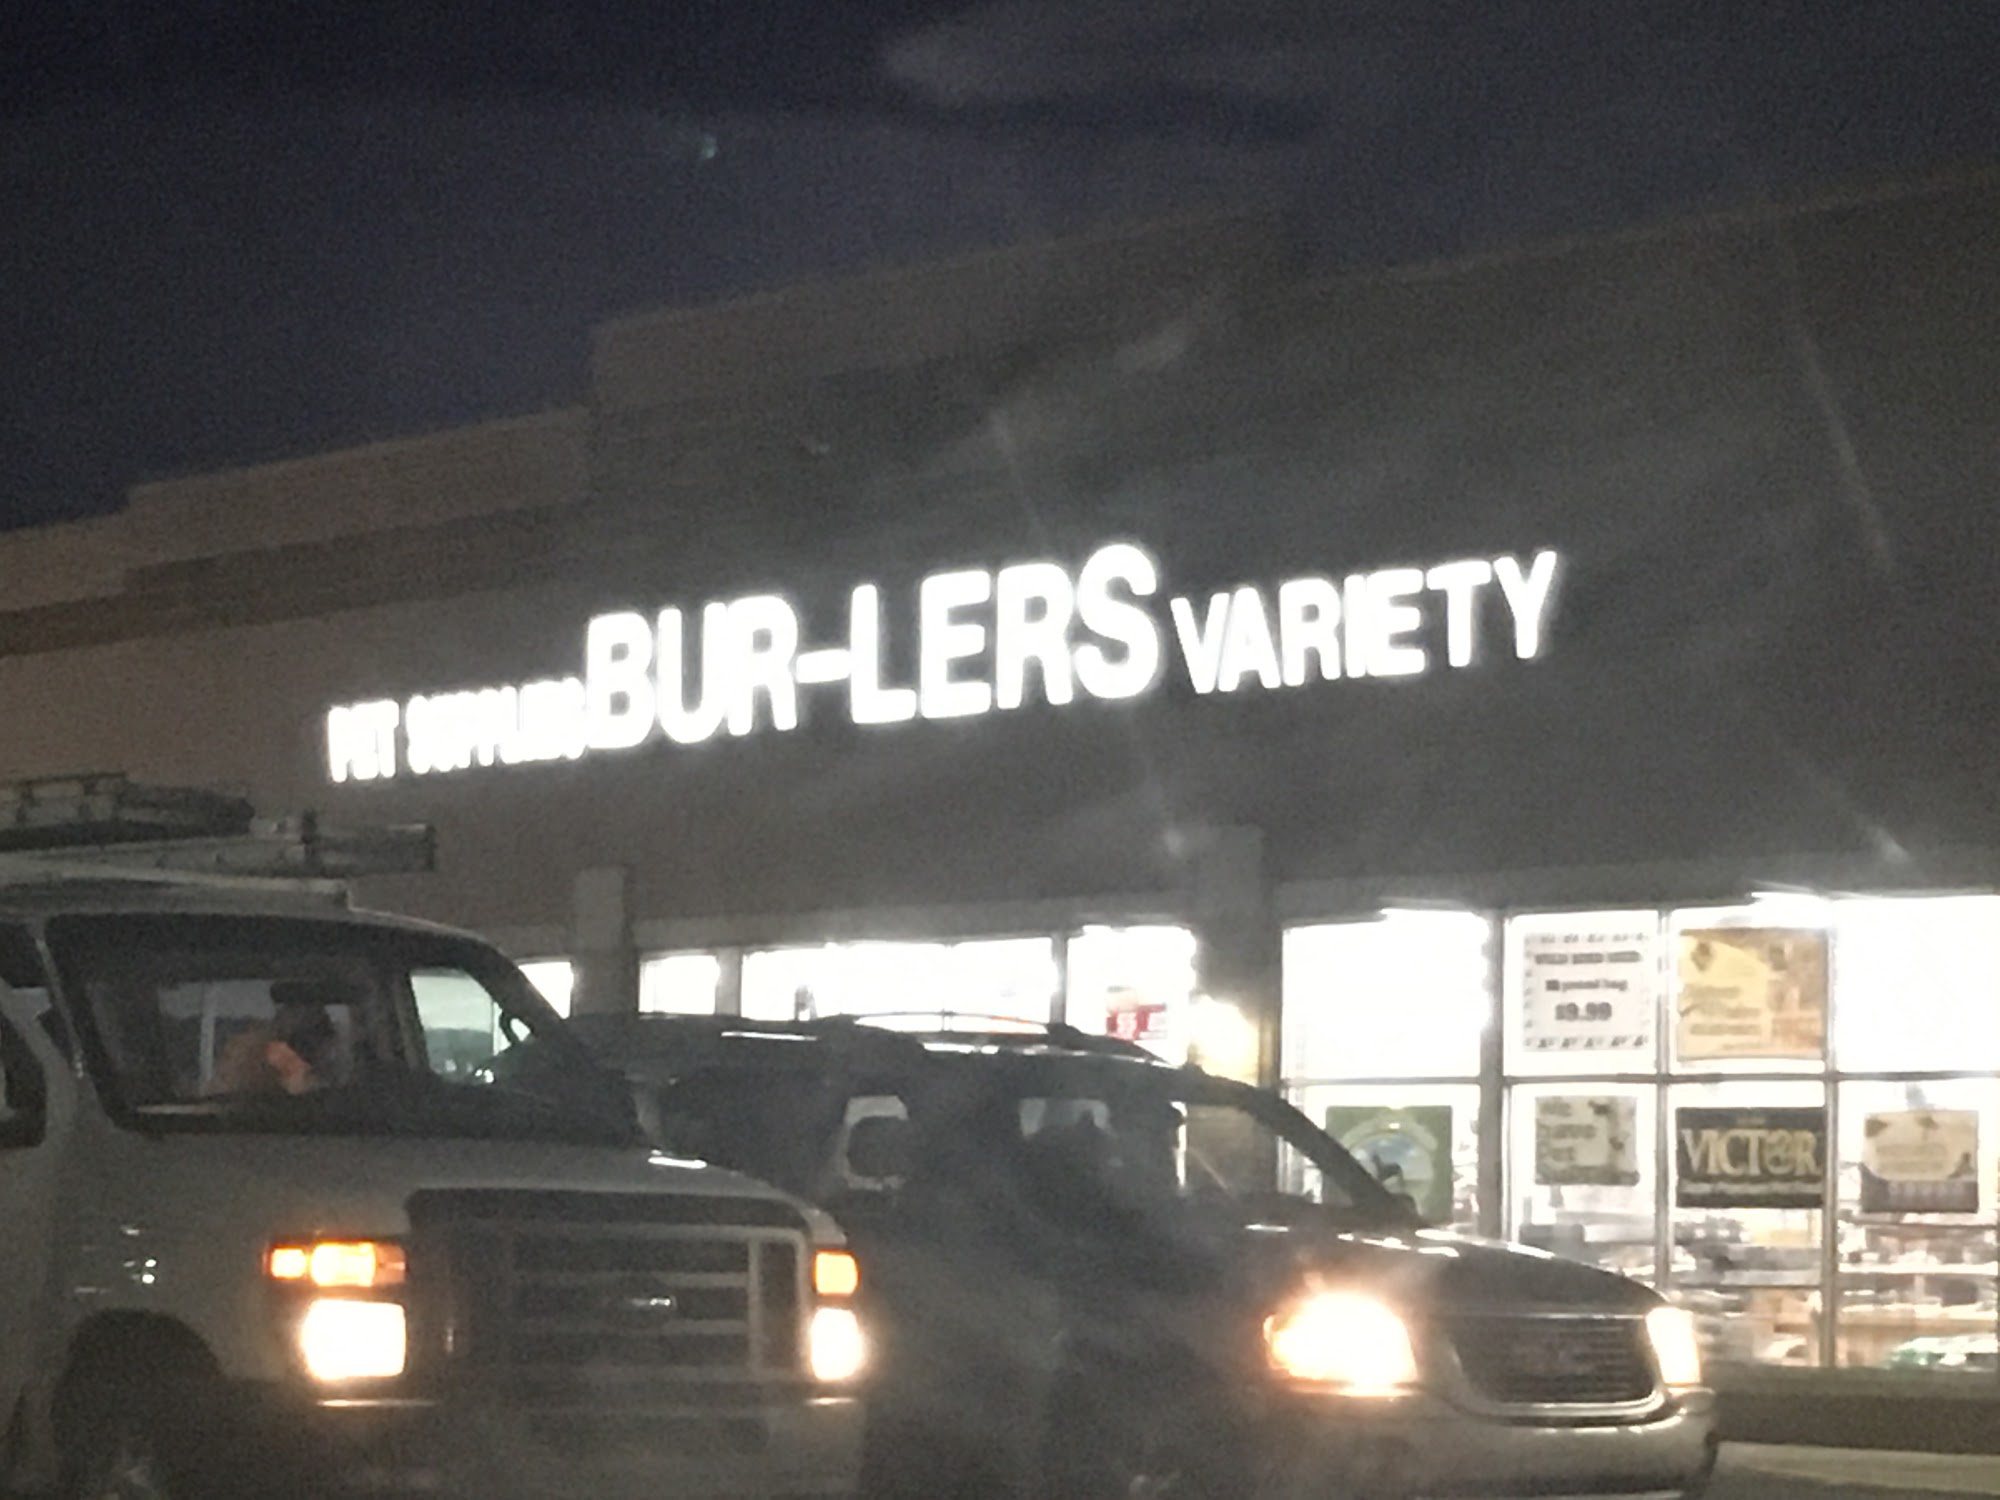 Bur-Lers Variety Store